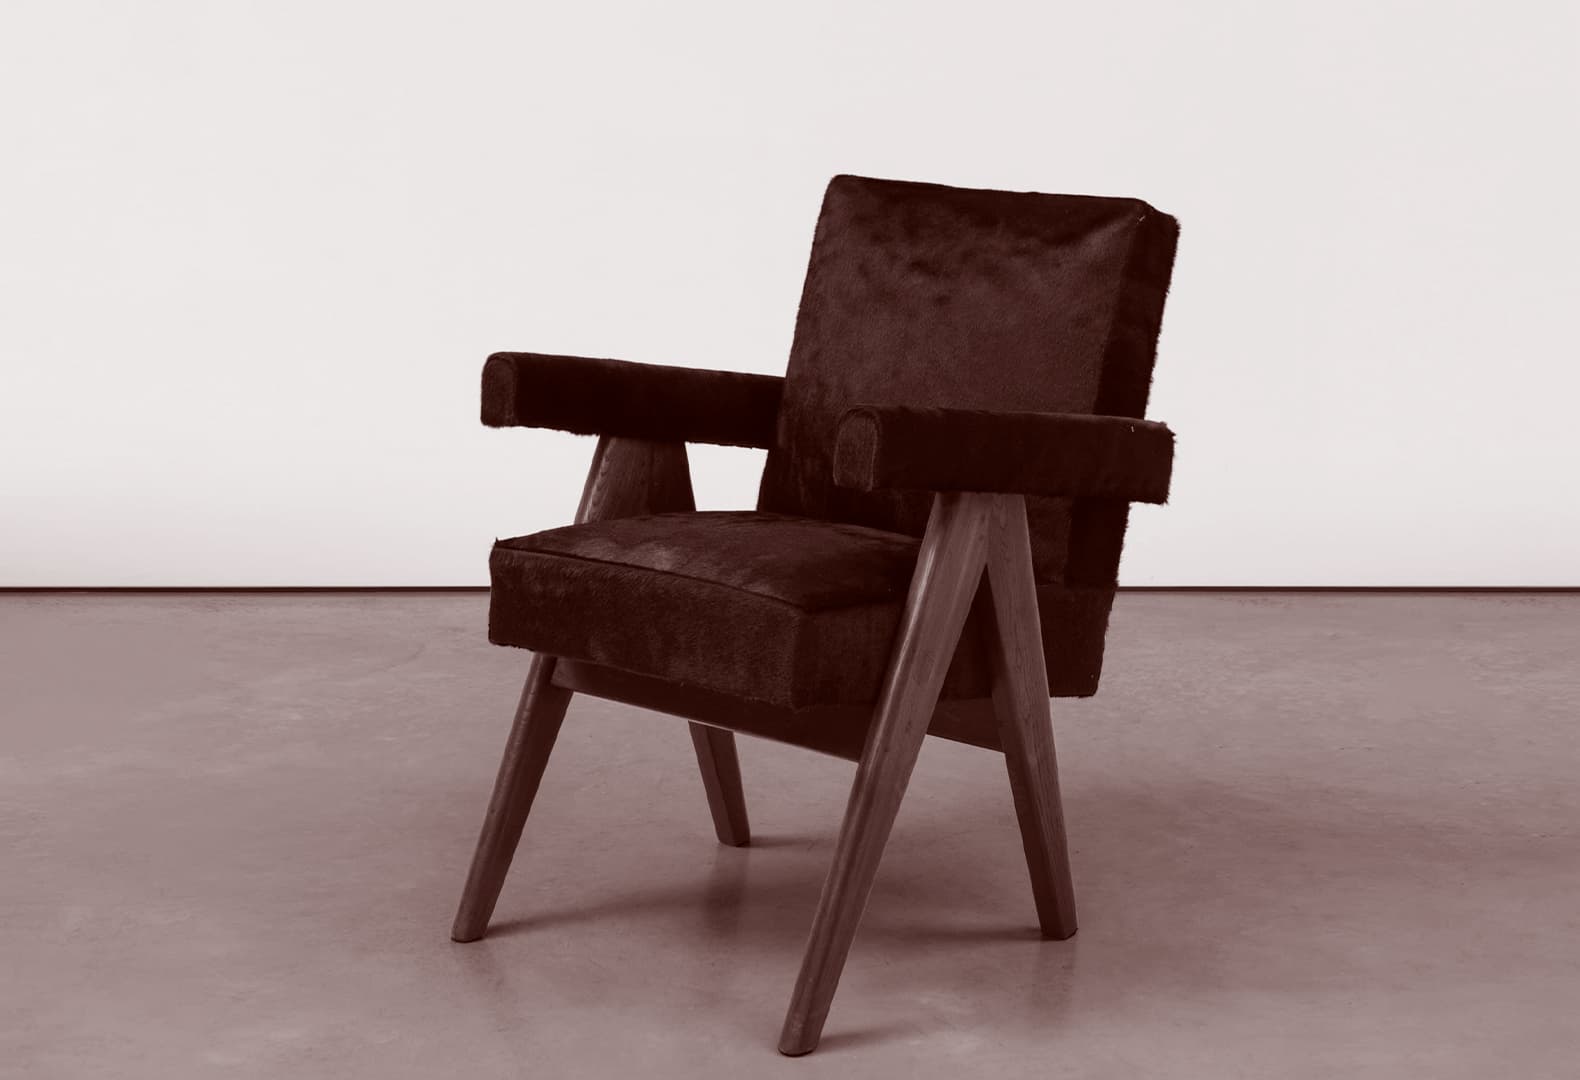 Кресло по дизайну Пьера Жаннере. Фото: Carpenters Workshop Gallery